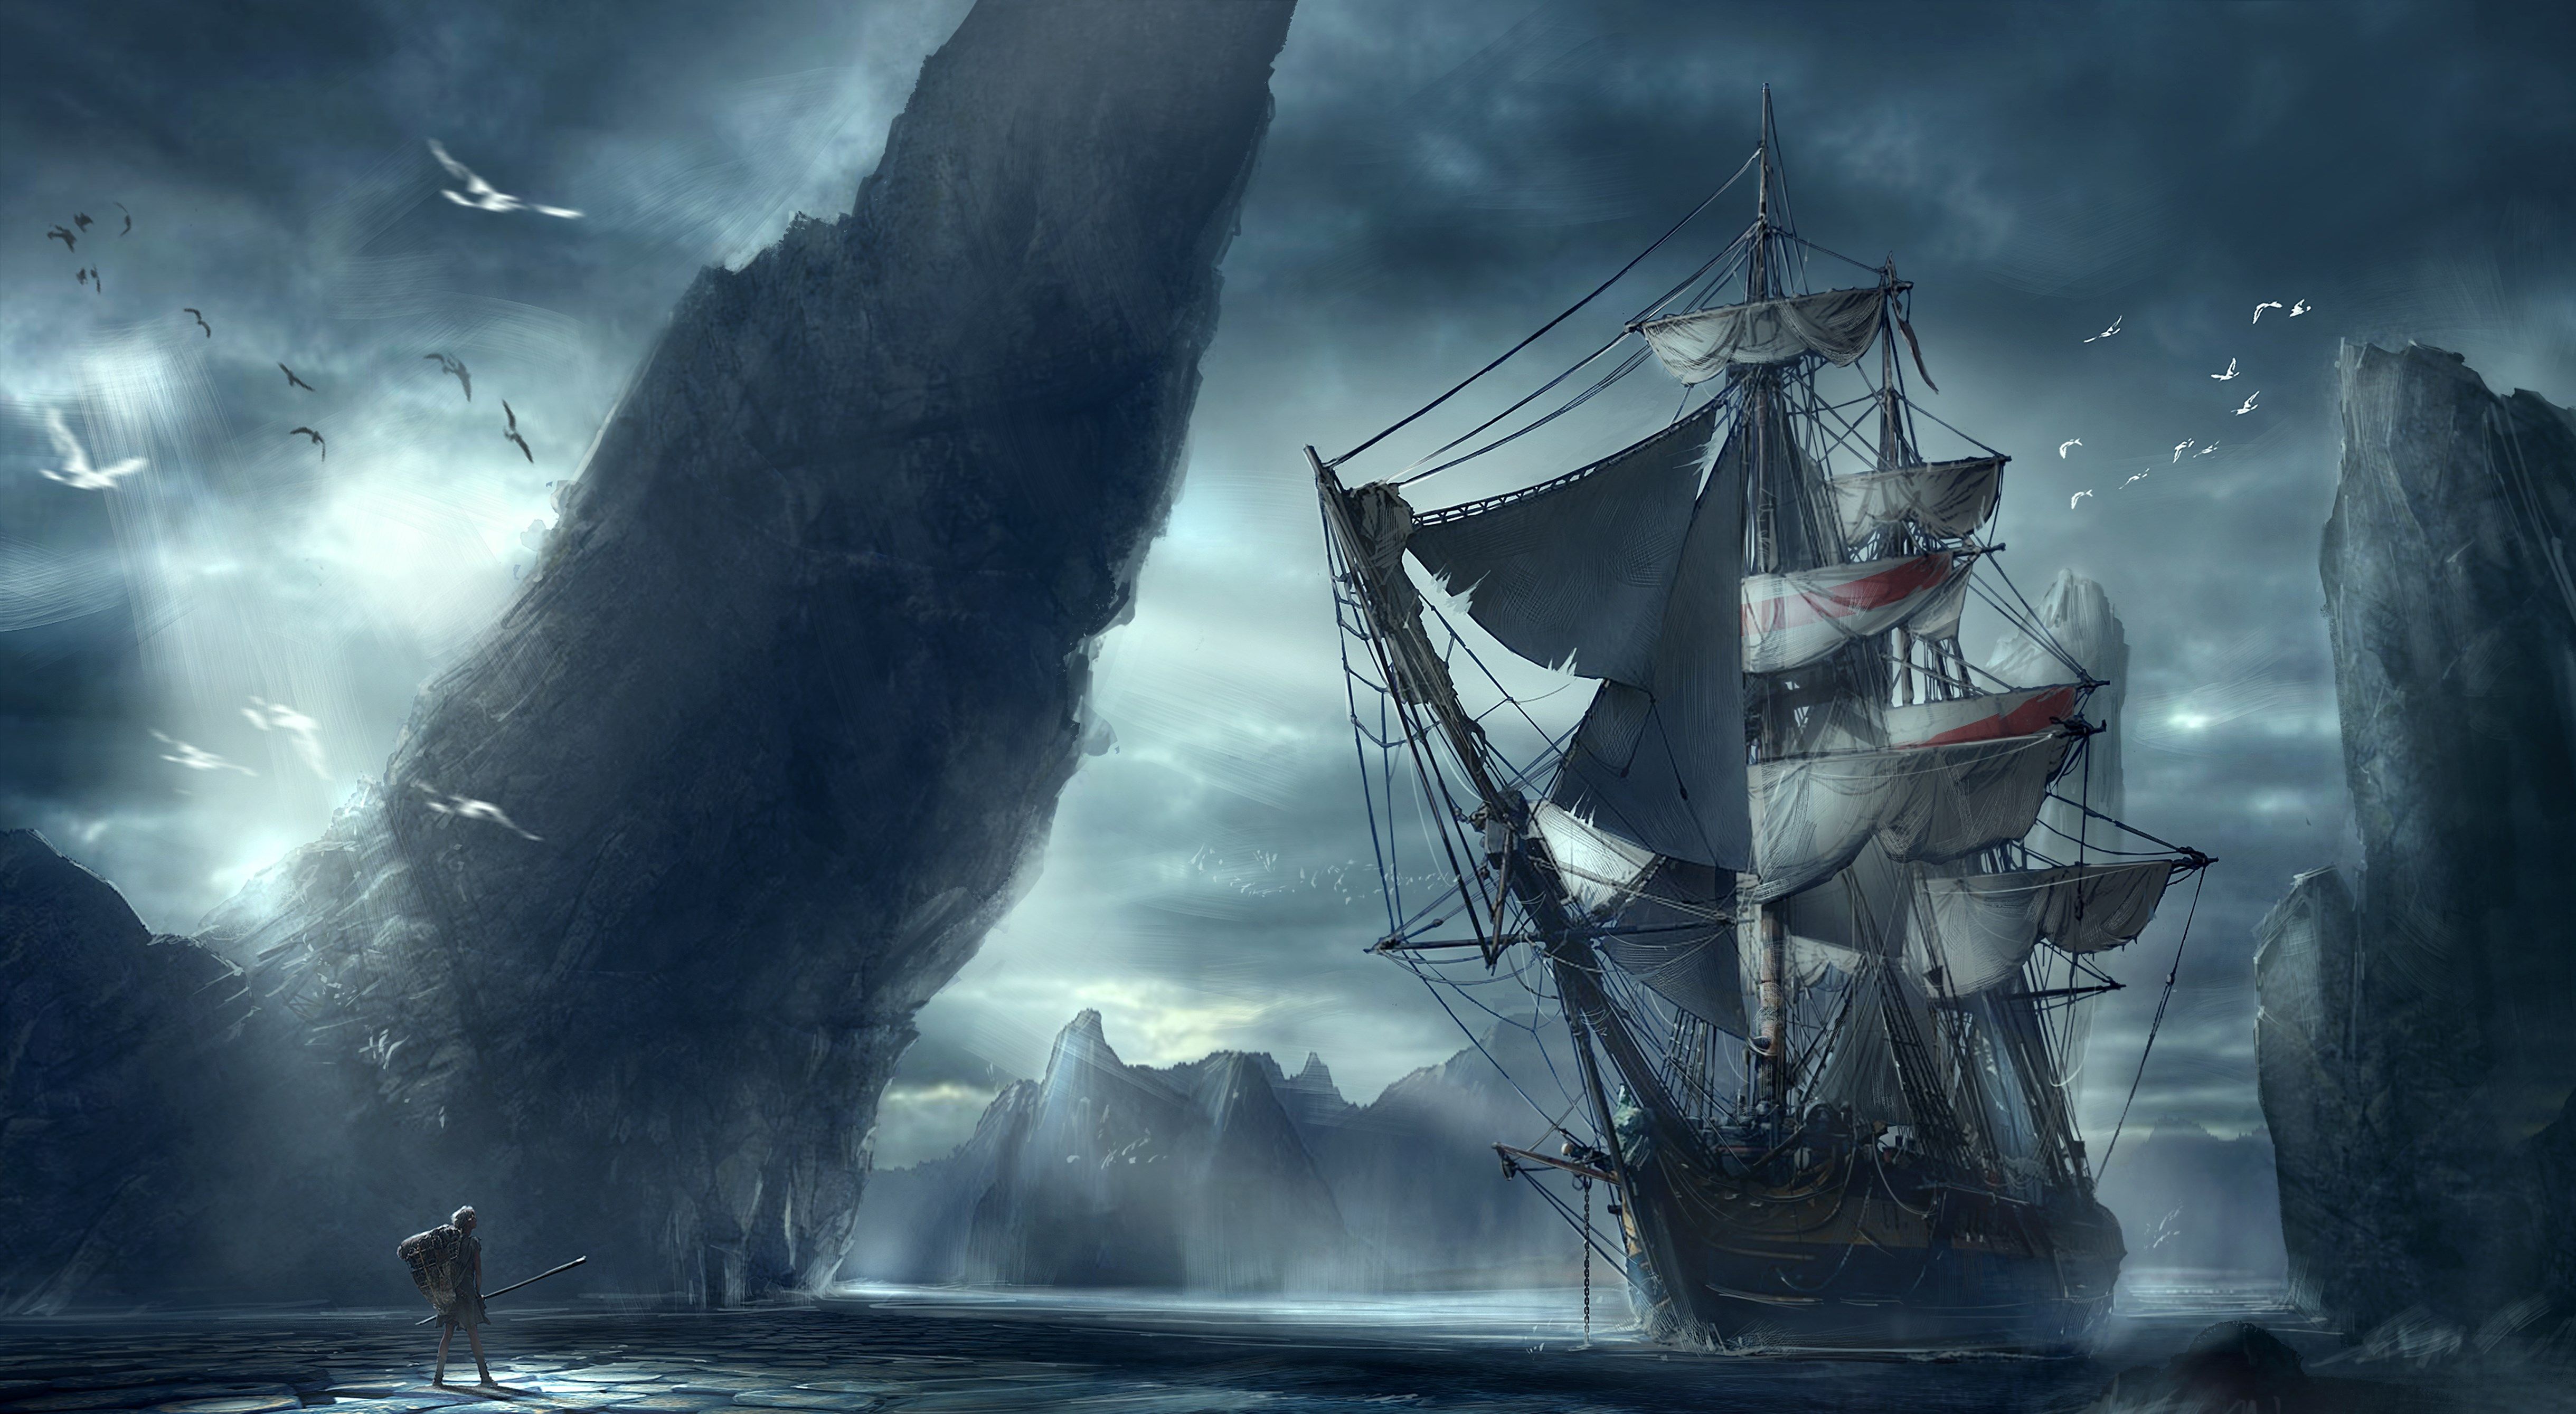 Что за корабли-призраки и почему они связаны с прошлым рассказом?